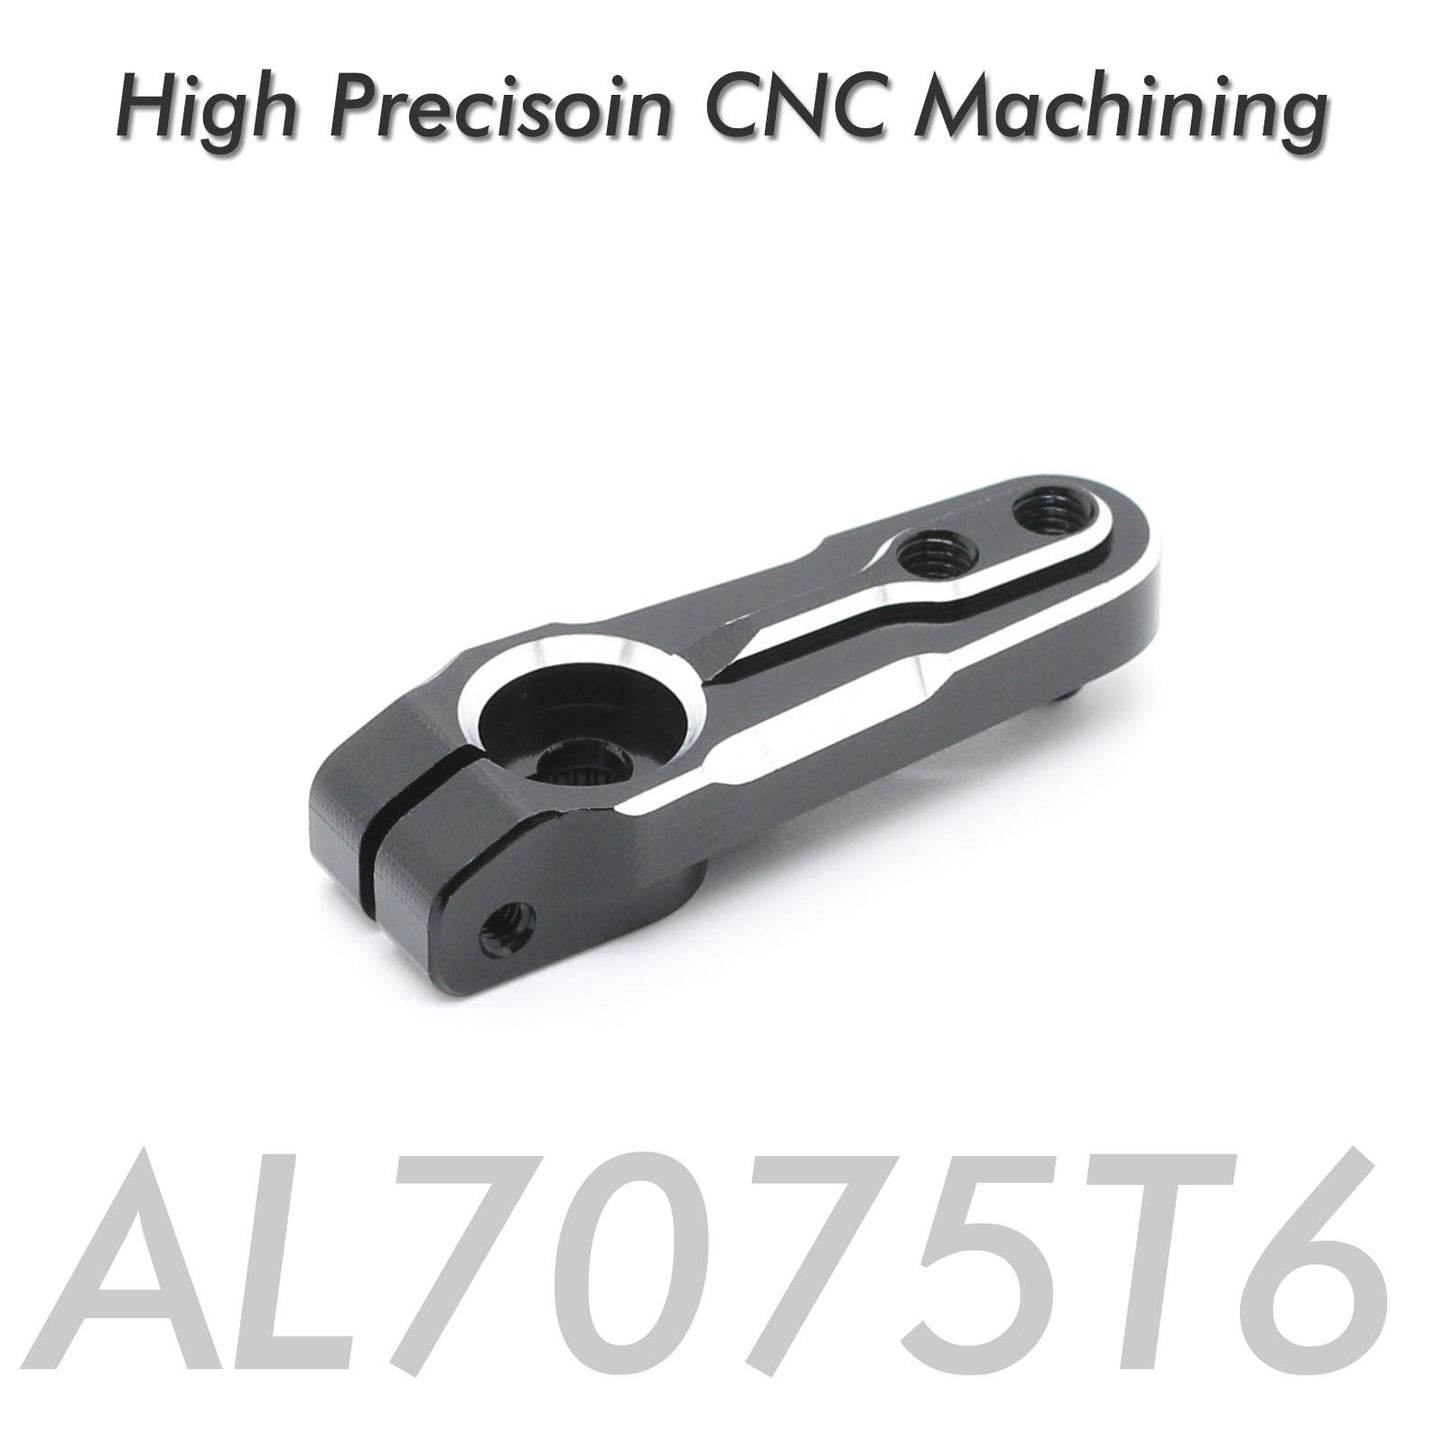 Sincecam 25T Metal Servo Horn Aluminio AL7075T6 Brazo de dirección adecuado para 1/8 1/10 1/12 Scales RC Models